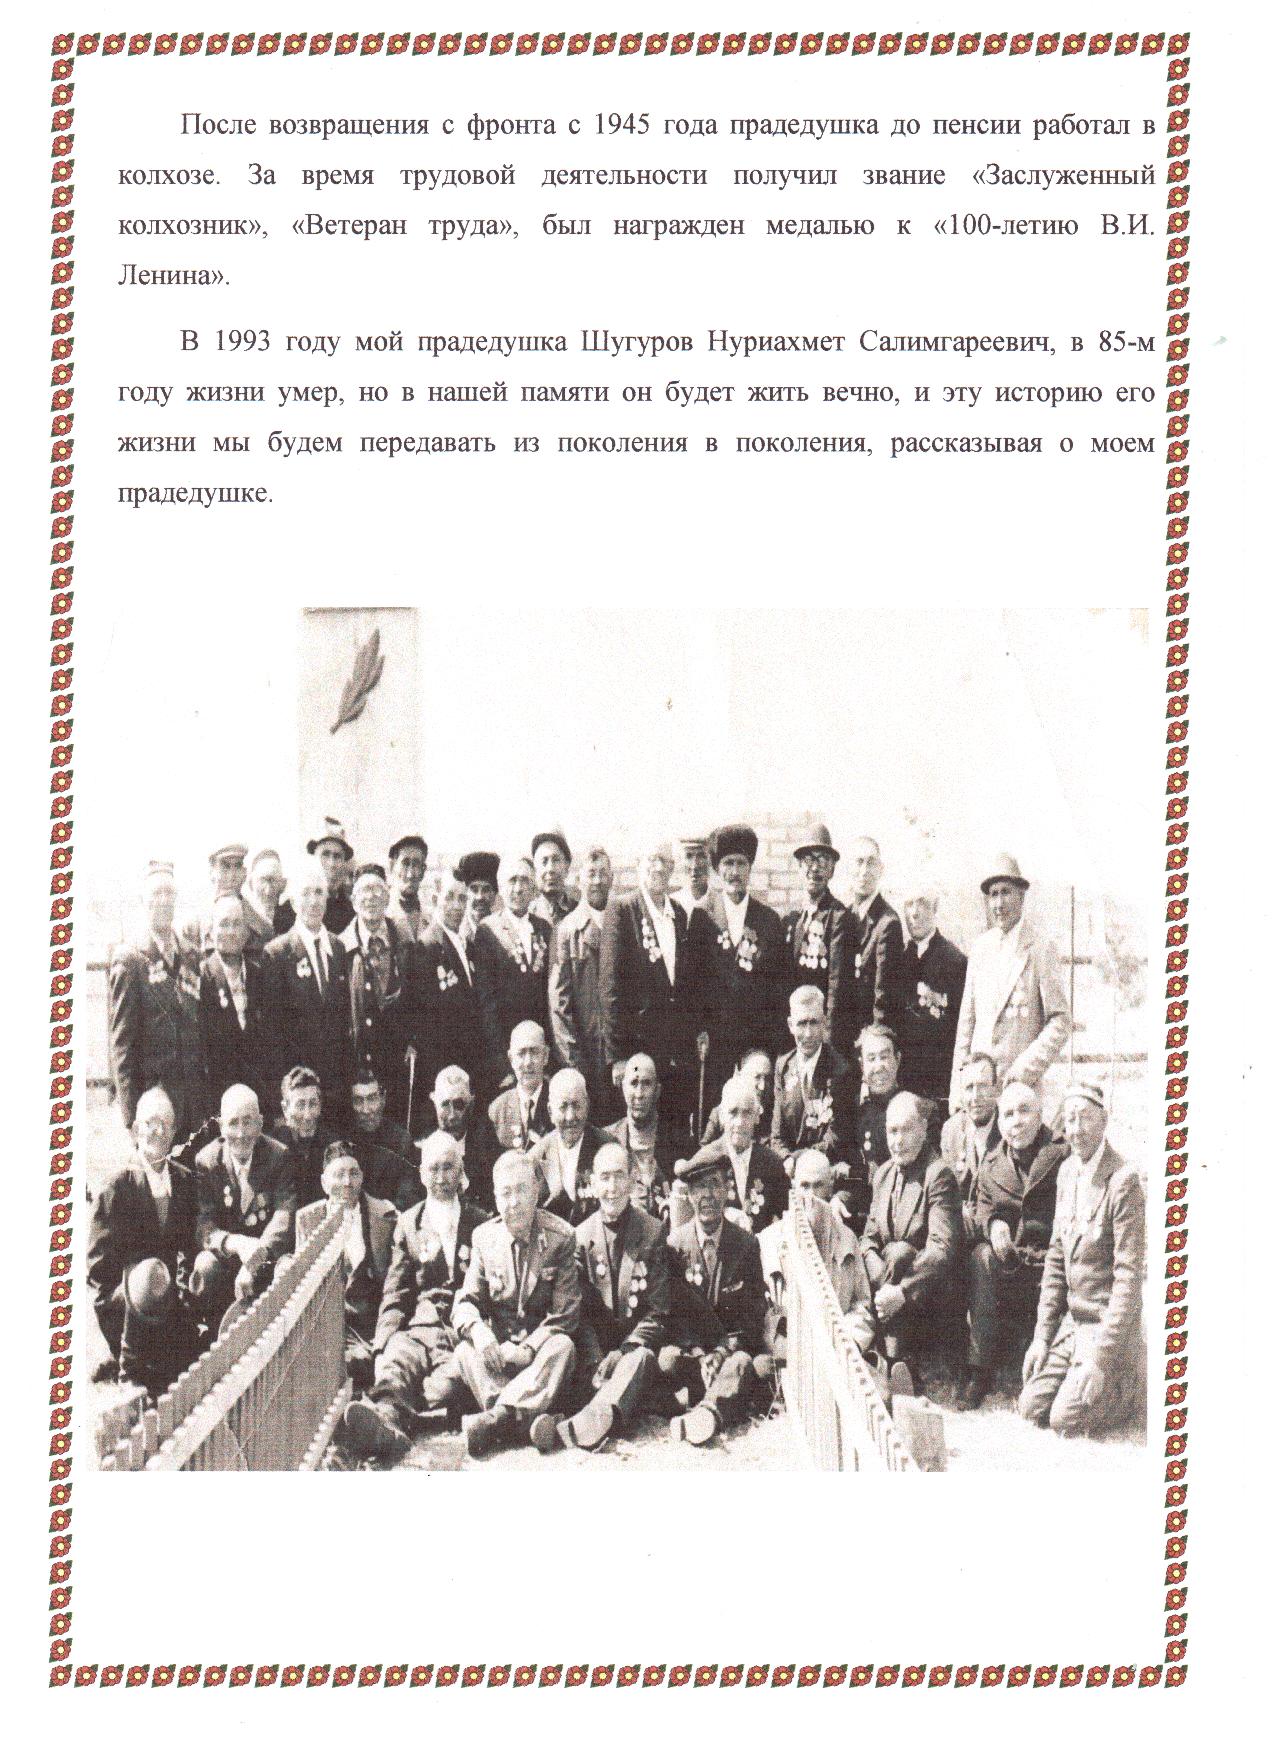 Годы Великой Отечественной Войны в судьбе моего прадедушки Шугурова Нуриахмета Салимгареевича